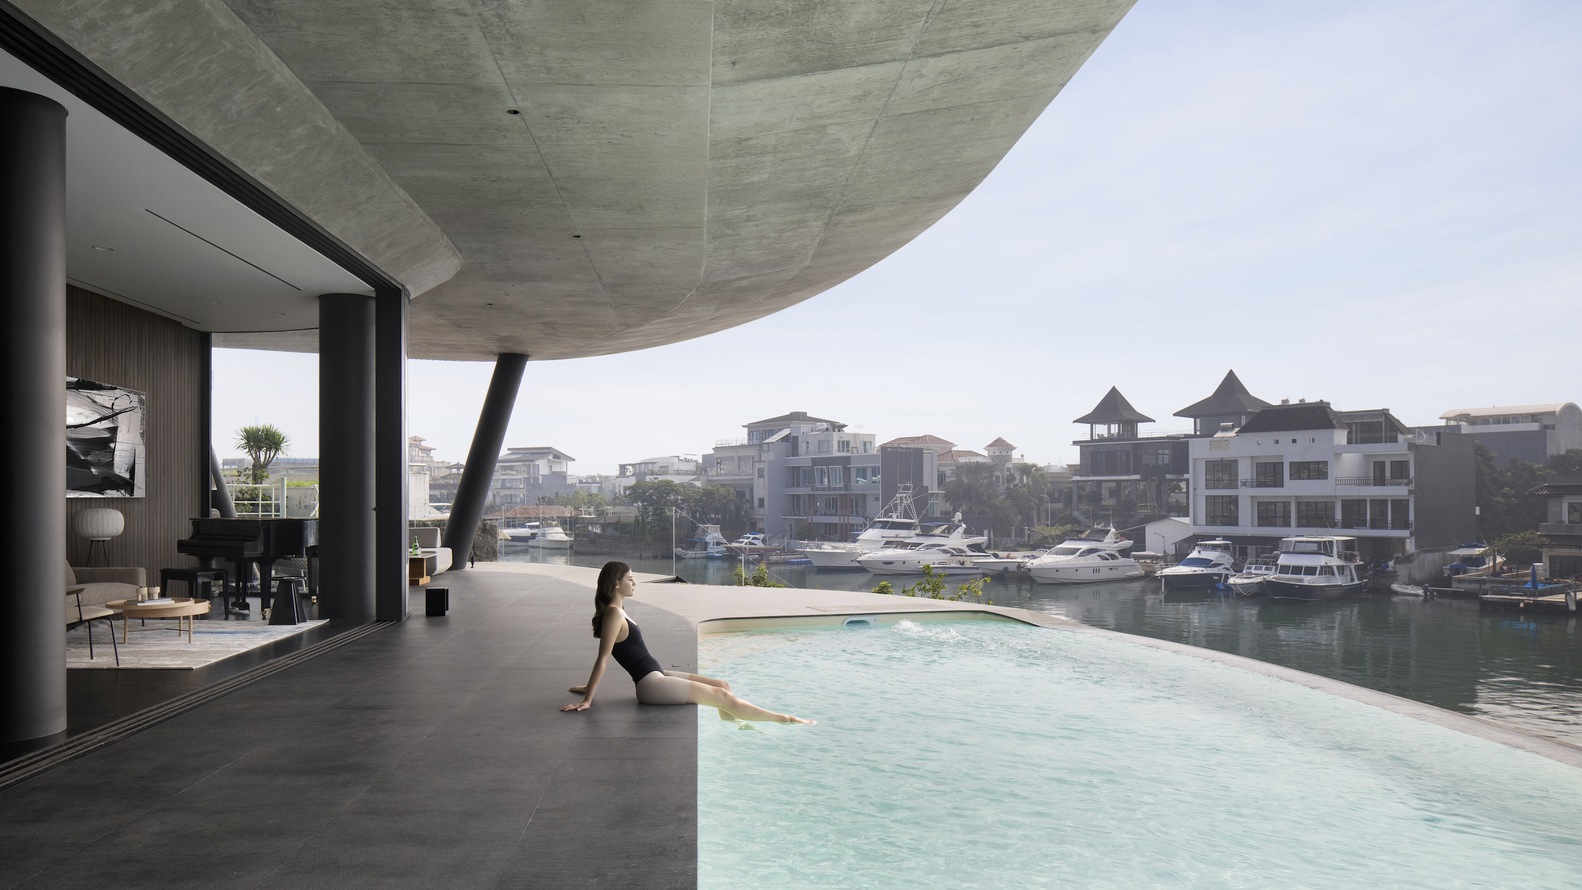 K-Thengono Design Studio,印度尼西亚,550㎡,雅加达,海滨别墅,别墅设计案例,泳池别墅,曲线,别墅设计方案